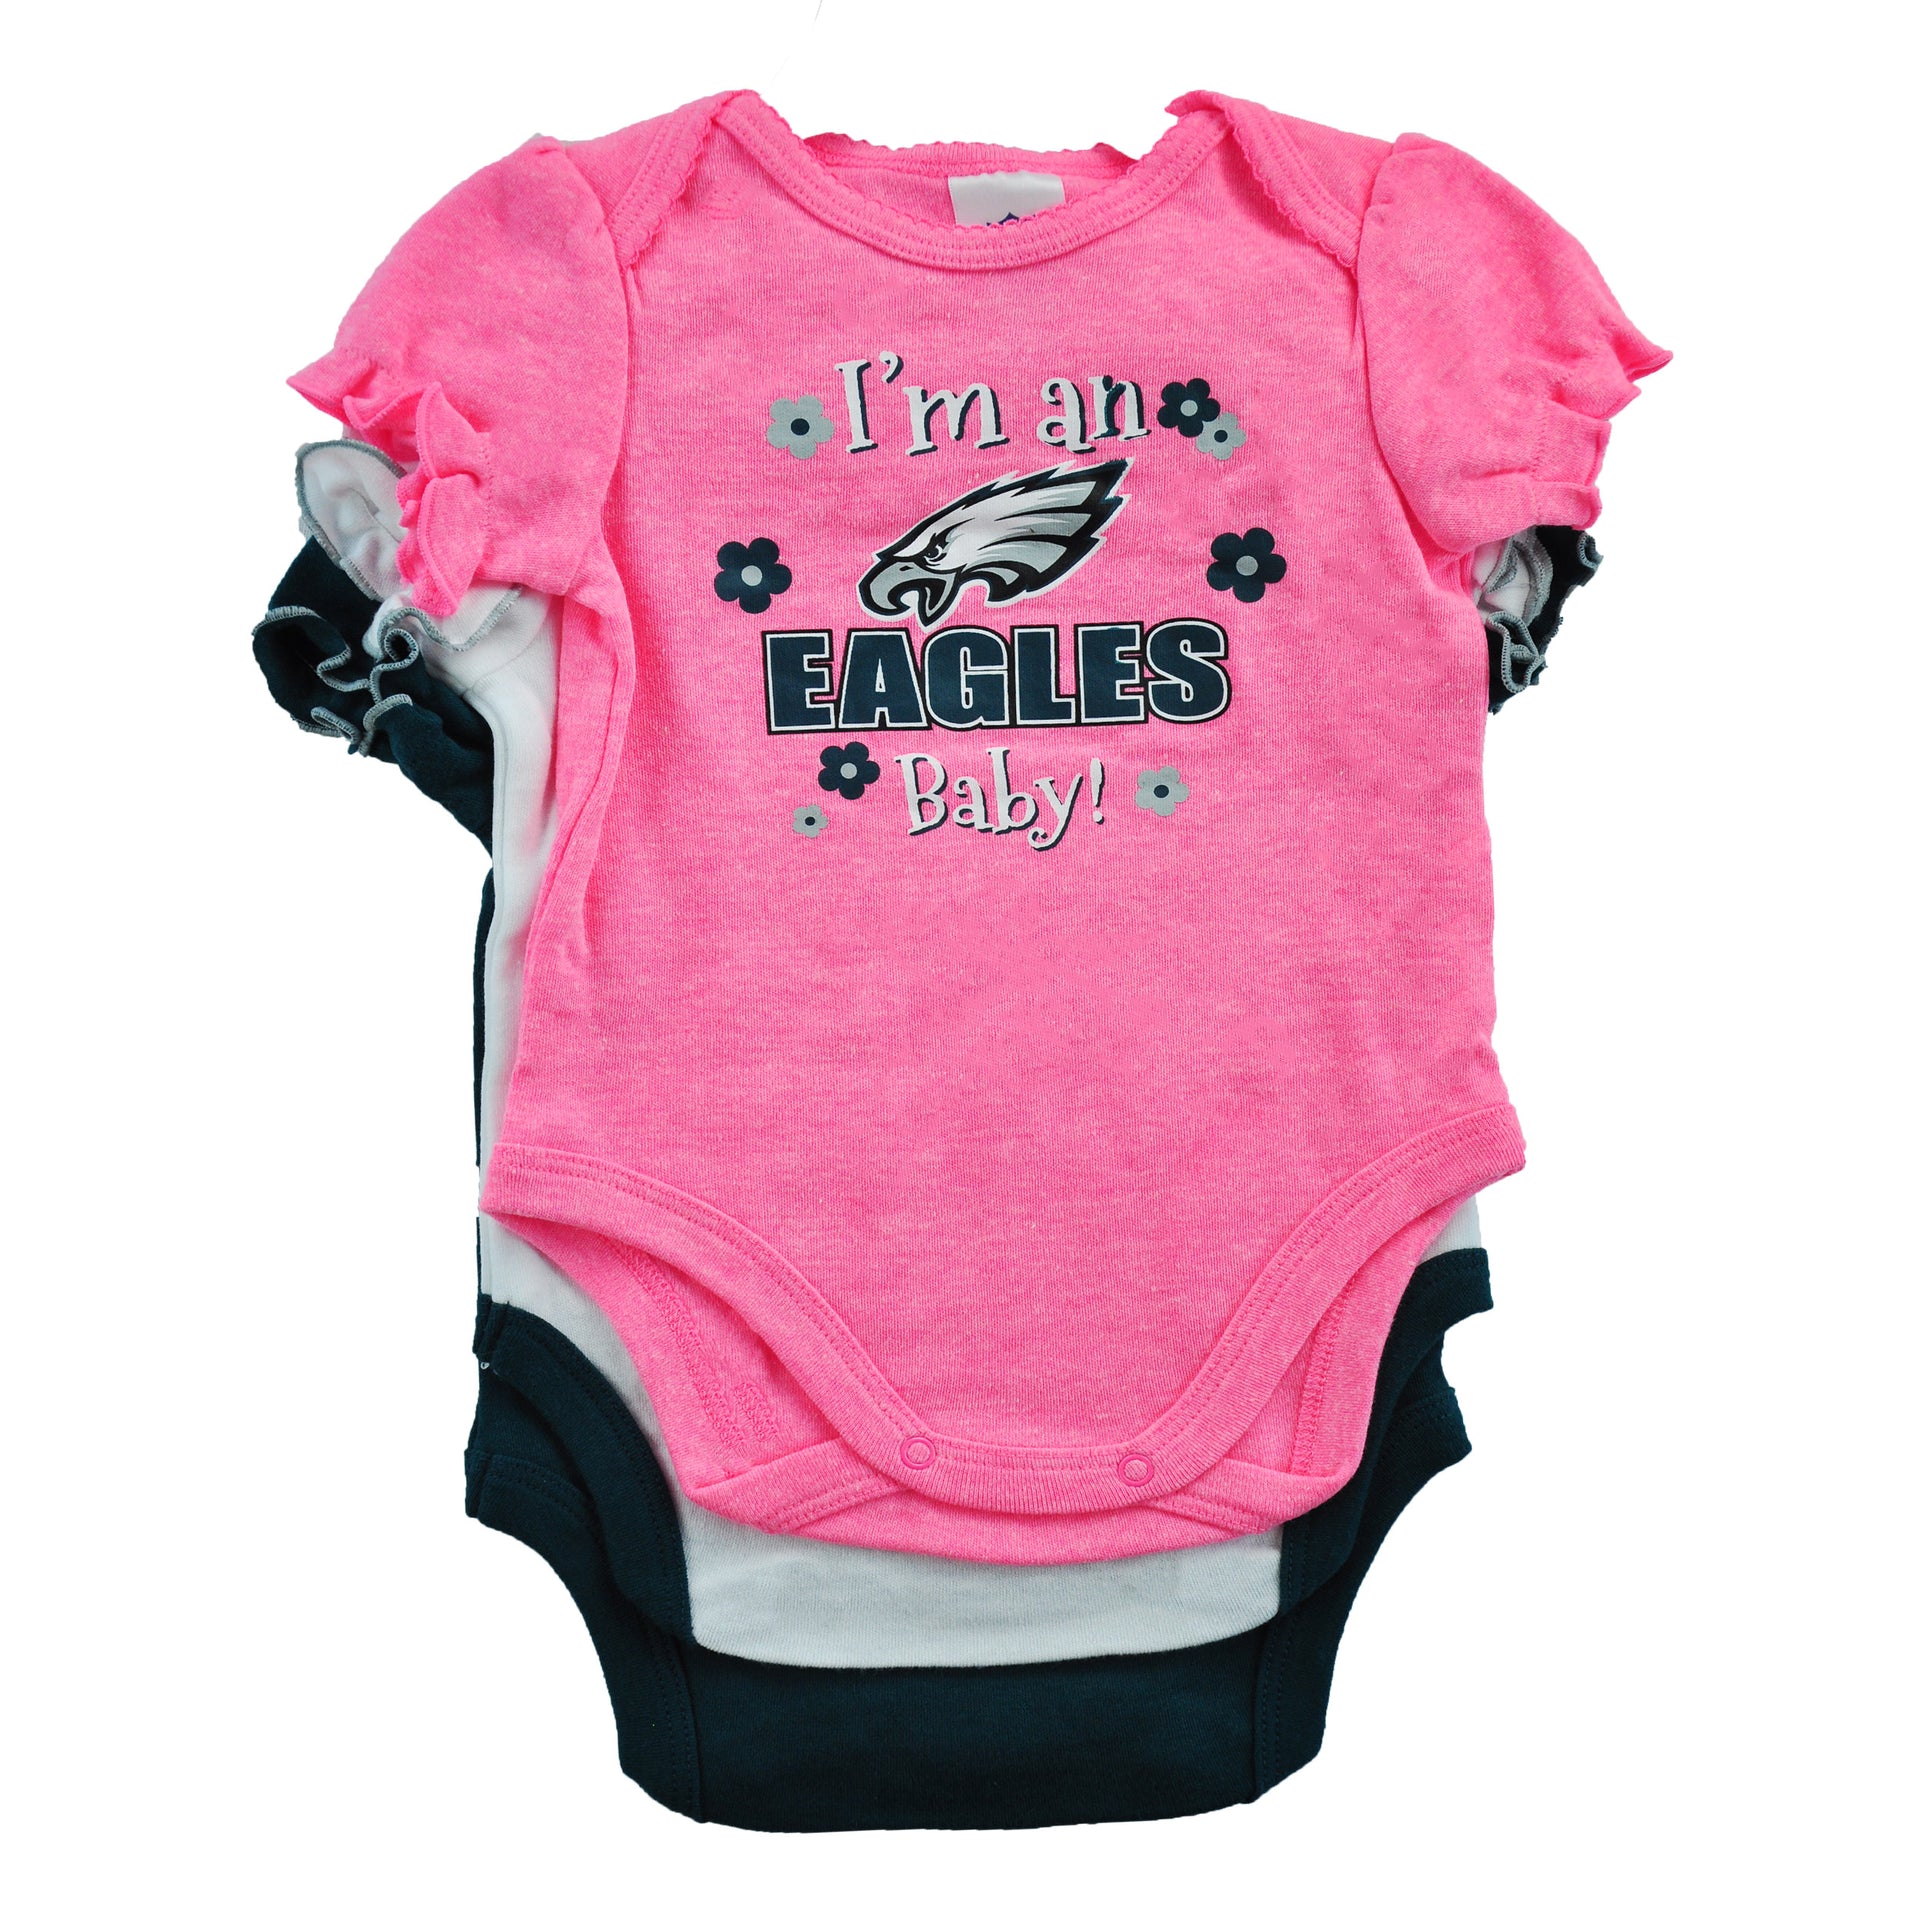 Philadelphia Baby Bodysuit. Phillies Eagles Sixers Flyers 